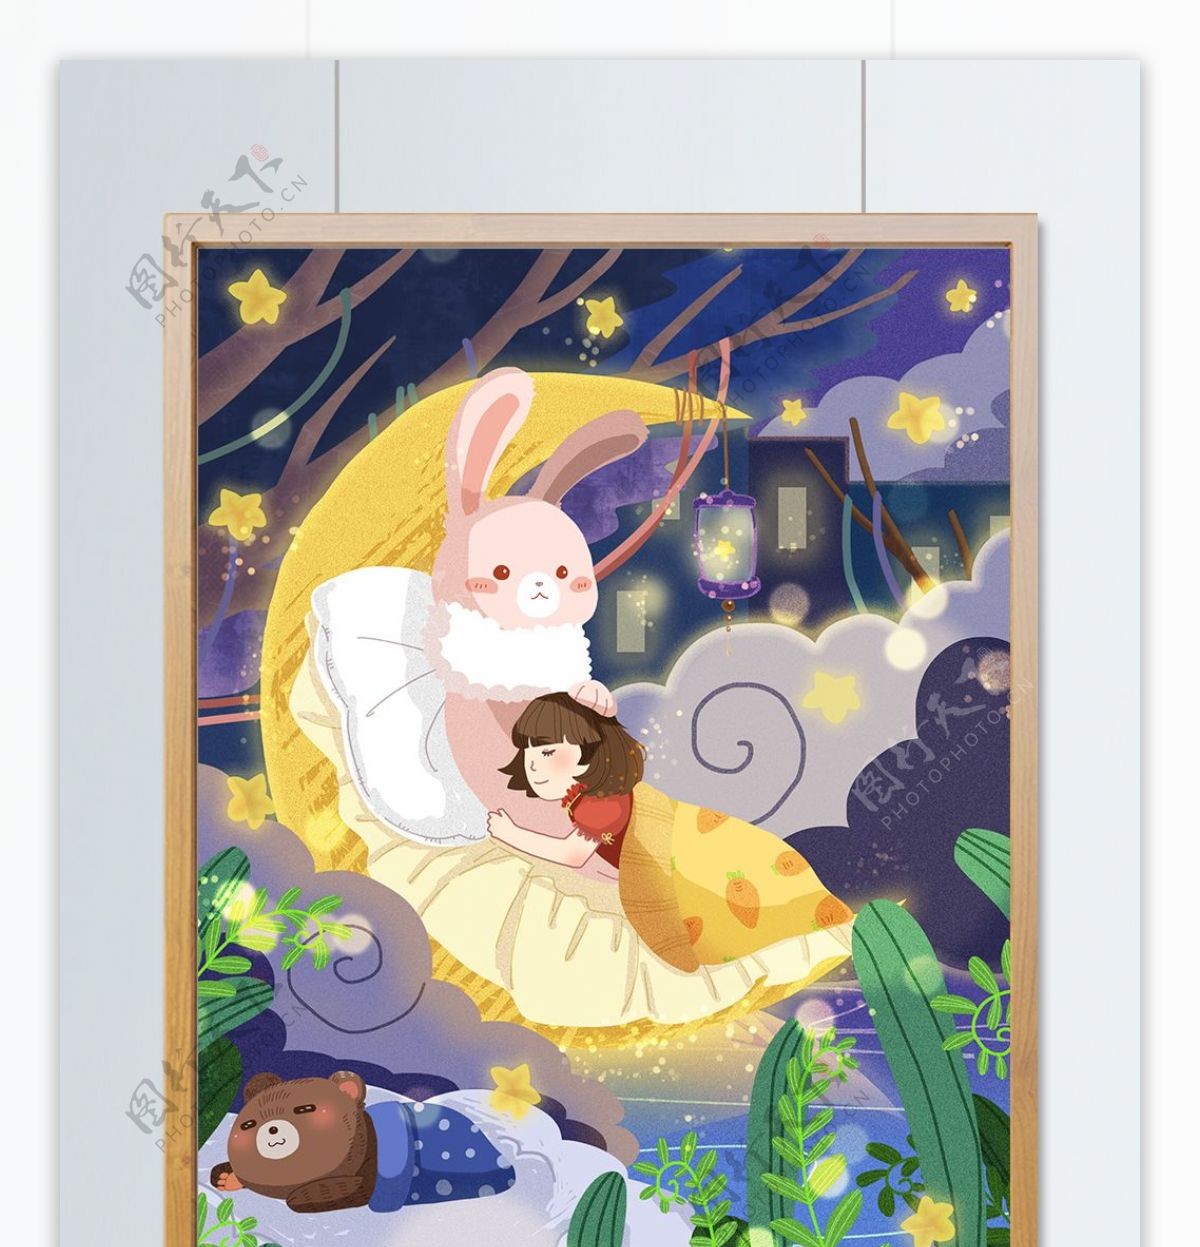 晚安之月亮兔子抱着女孩玩具熊幸福睡眠